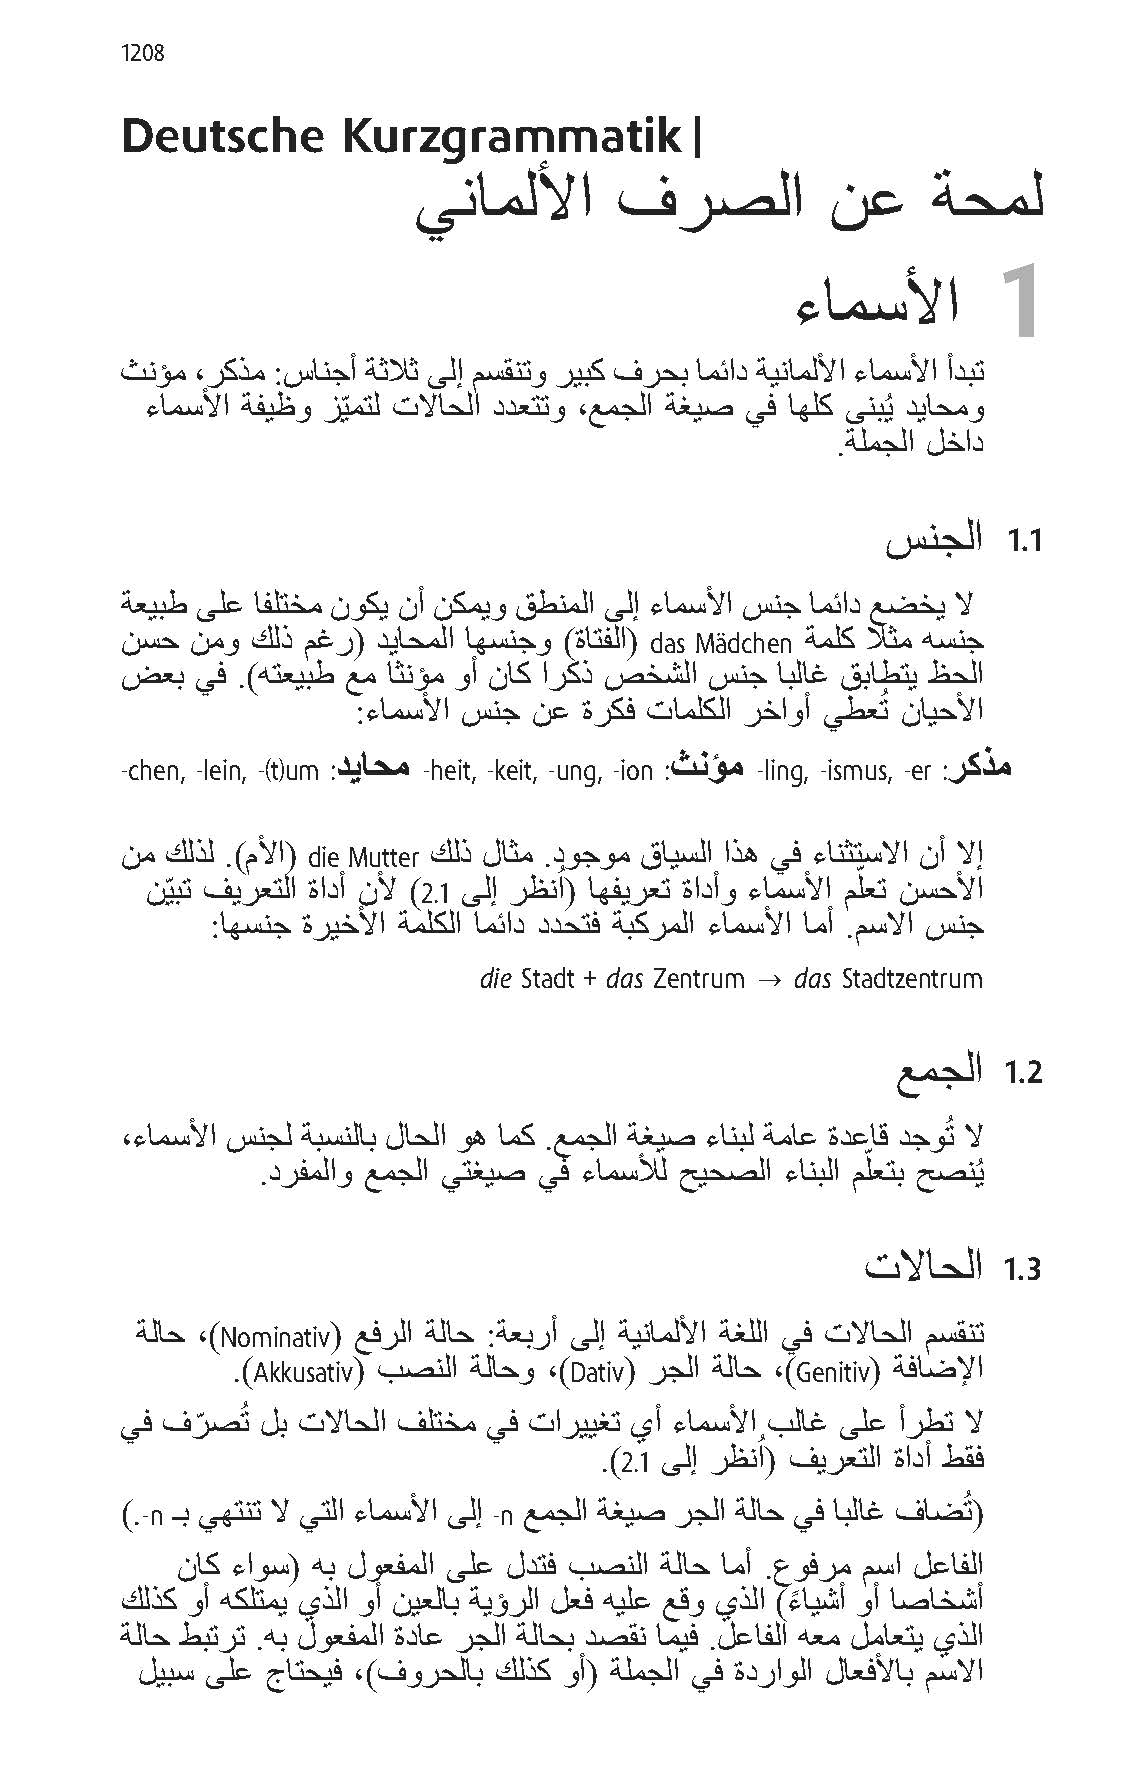 Langenscheidt Taschenwörterbuch Arabisch